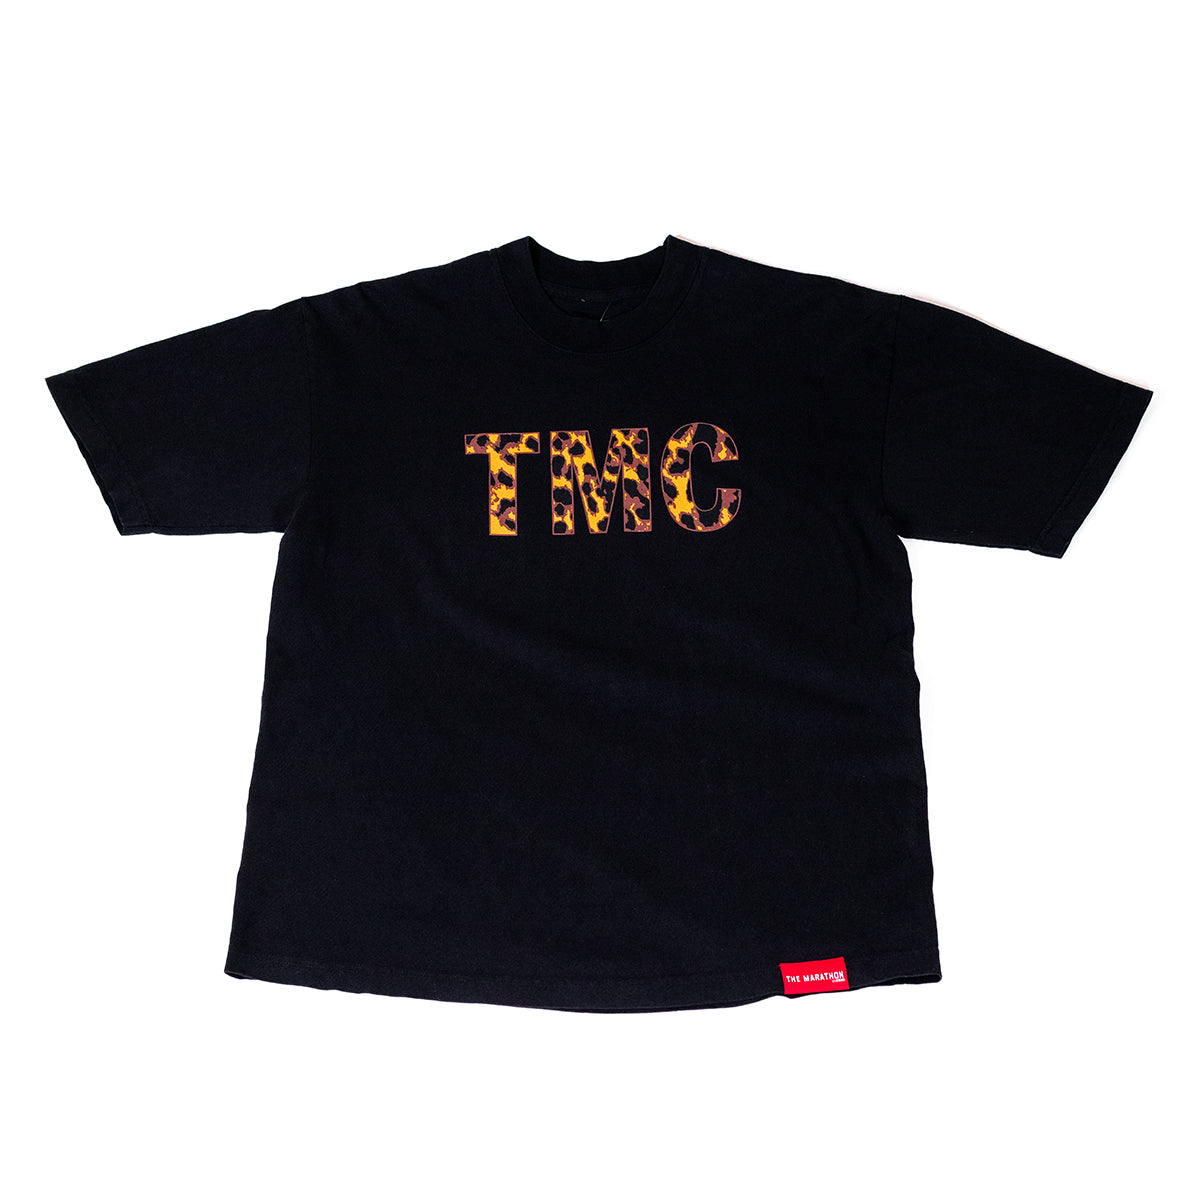 TMC T-shirt - Black/Leopard - Front